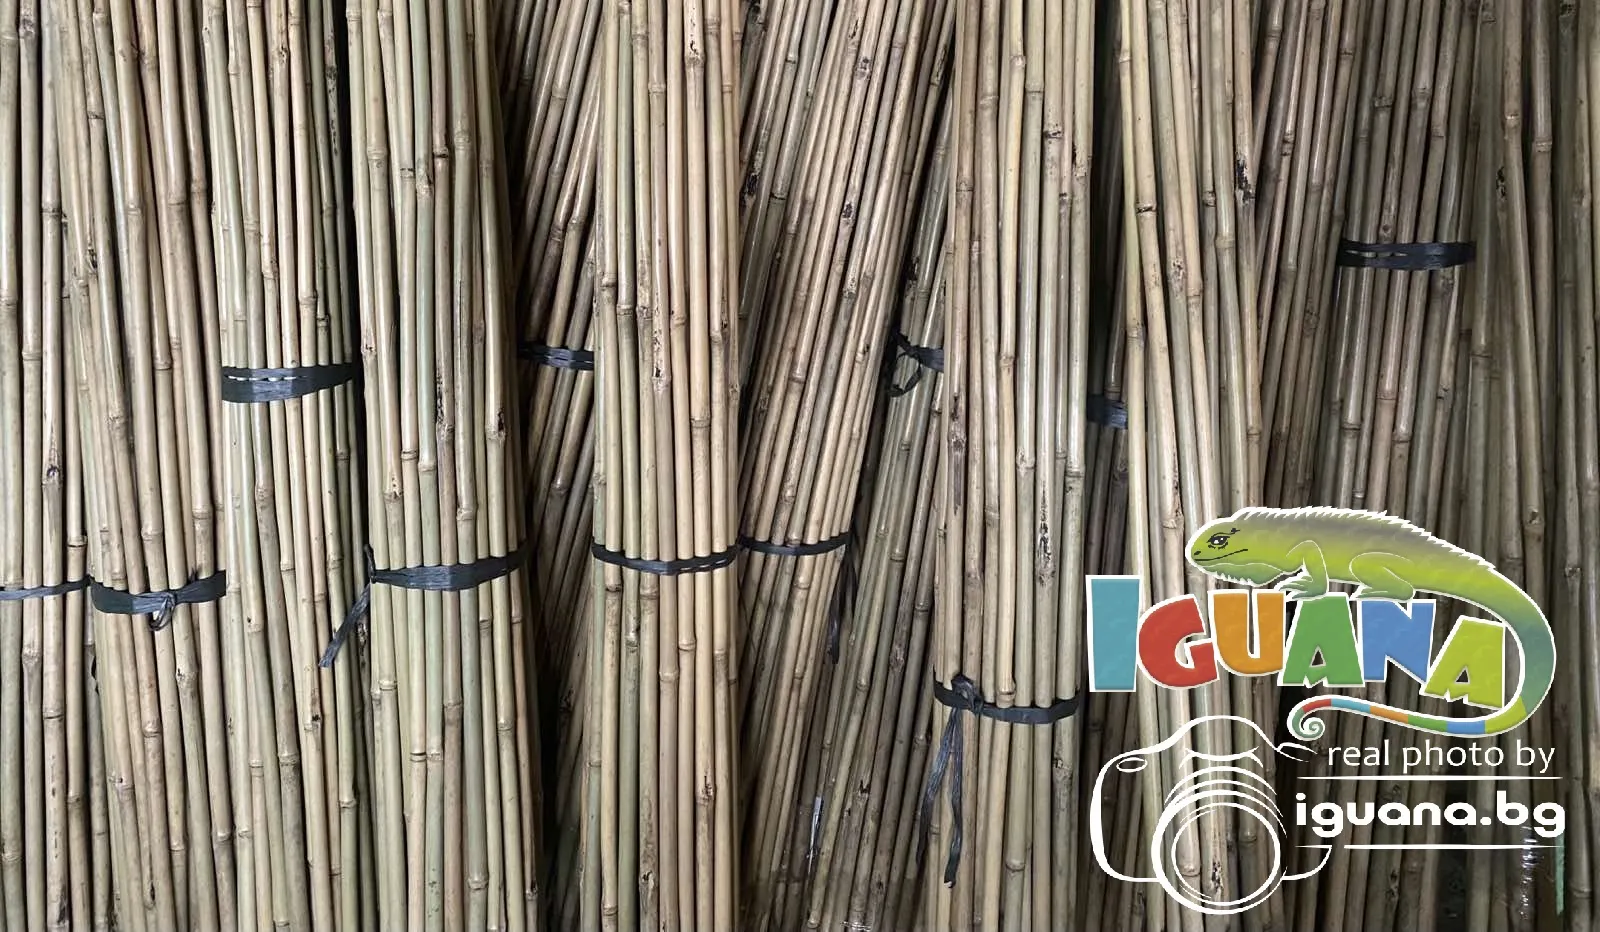 ПРОМО комплект 100 броя колчета от бамбук 210см Колчета за домати от естествен бамбук 210см кол, бамбукови пръчки 2,10м 8